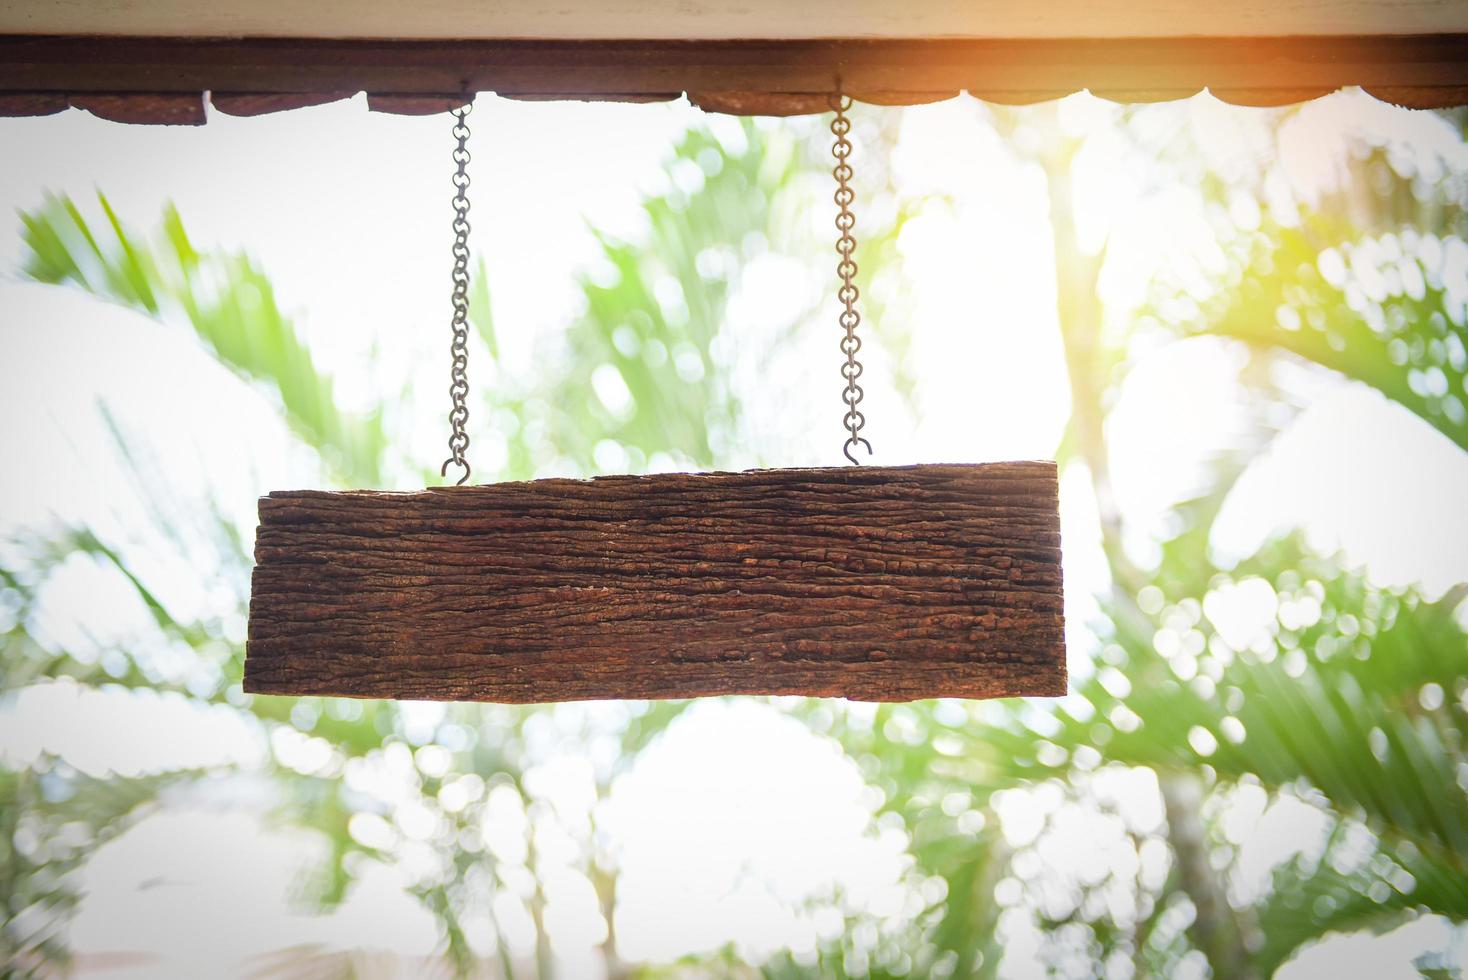 träskylt som hänger från taket - rustik skylt av ljus trä på åldrad trävägg foto